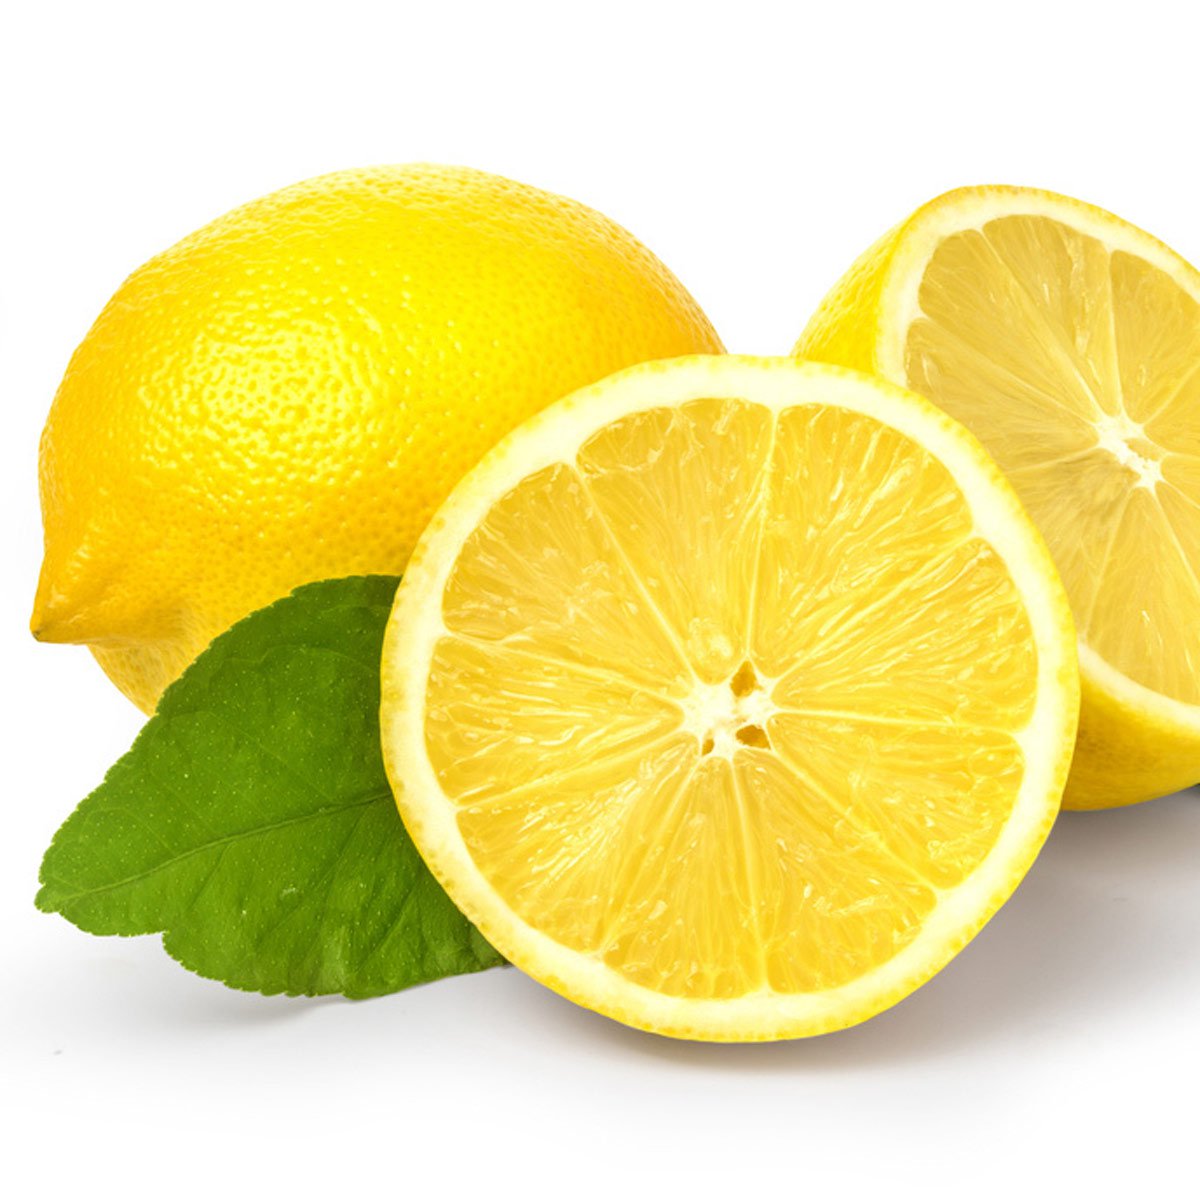 الليمون لازالة البثور من الوجه